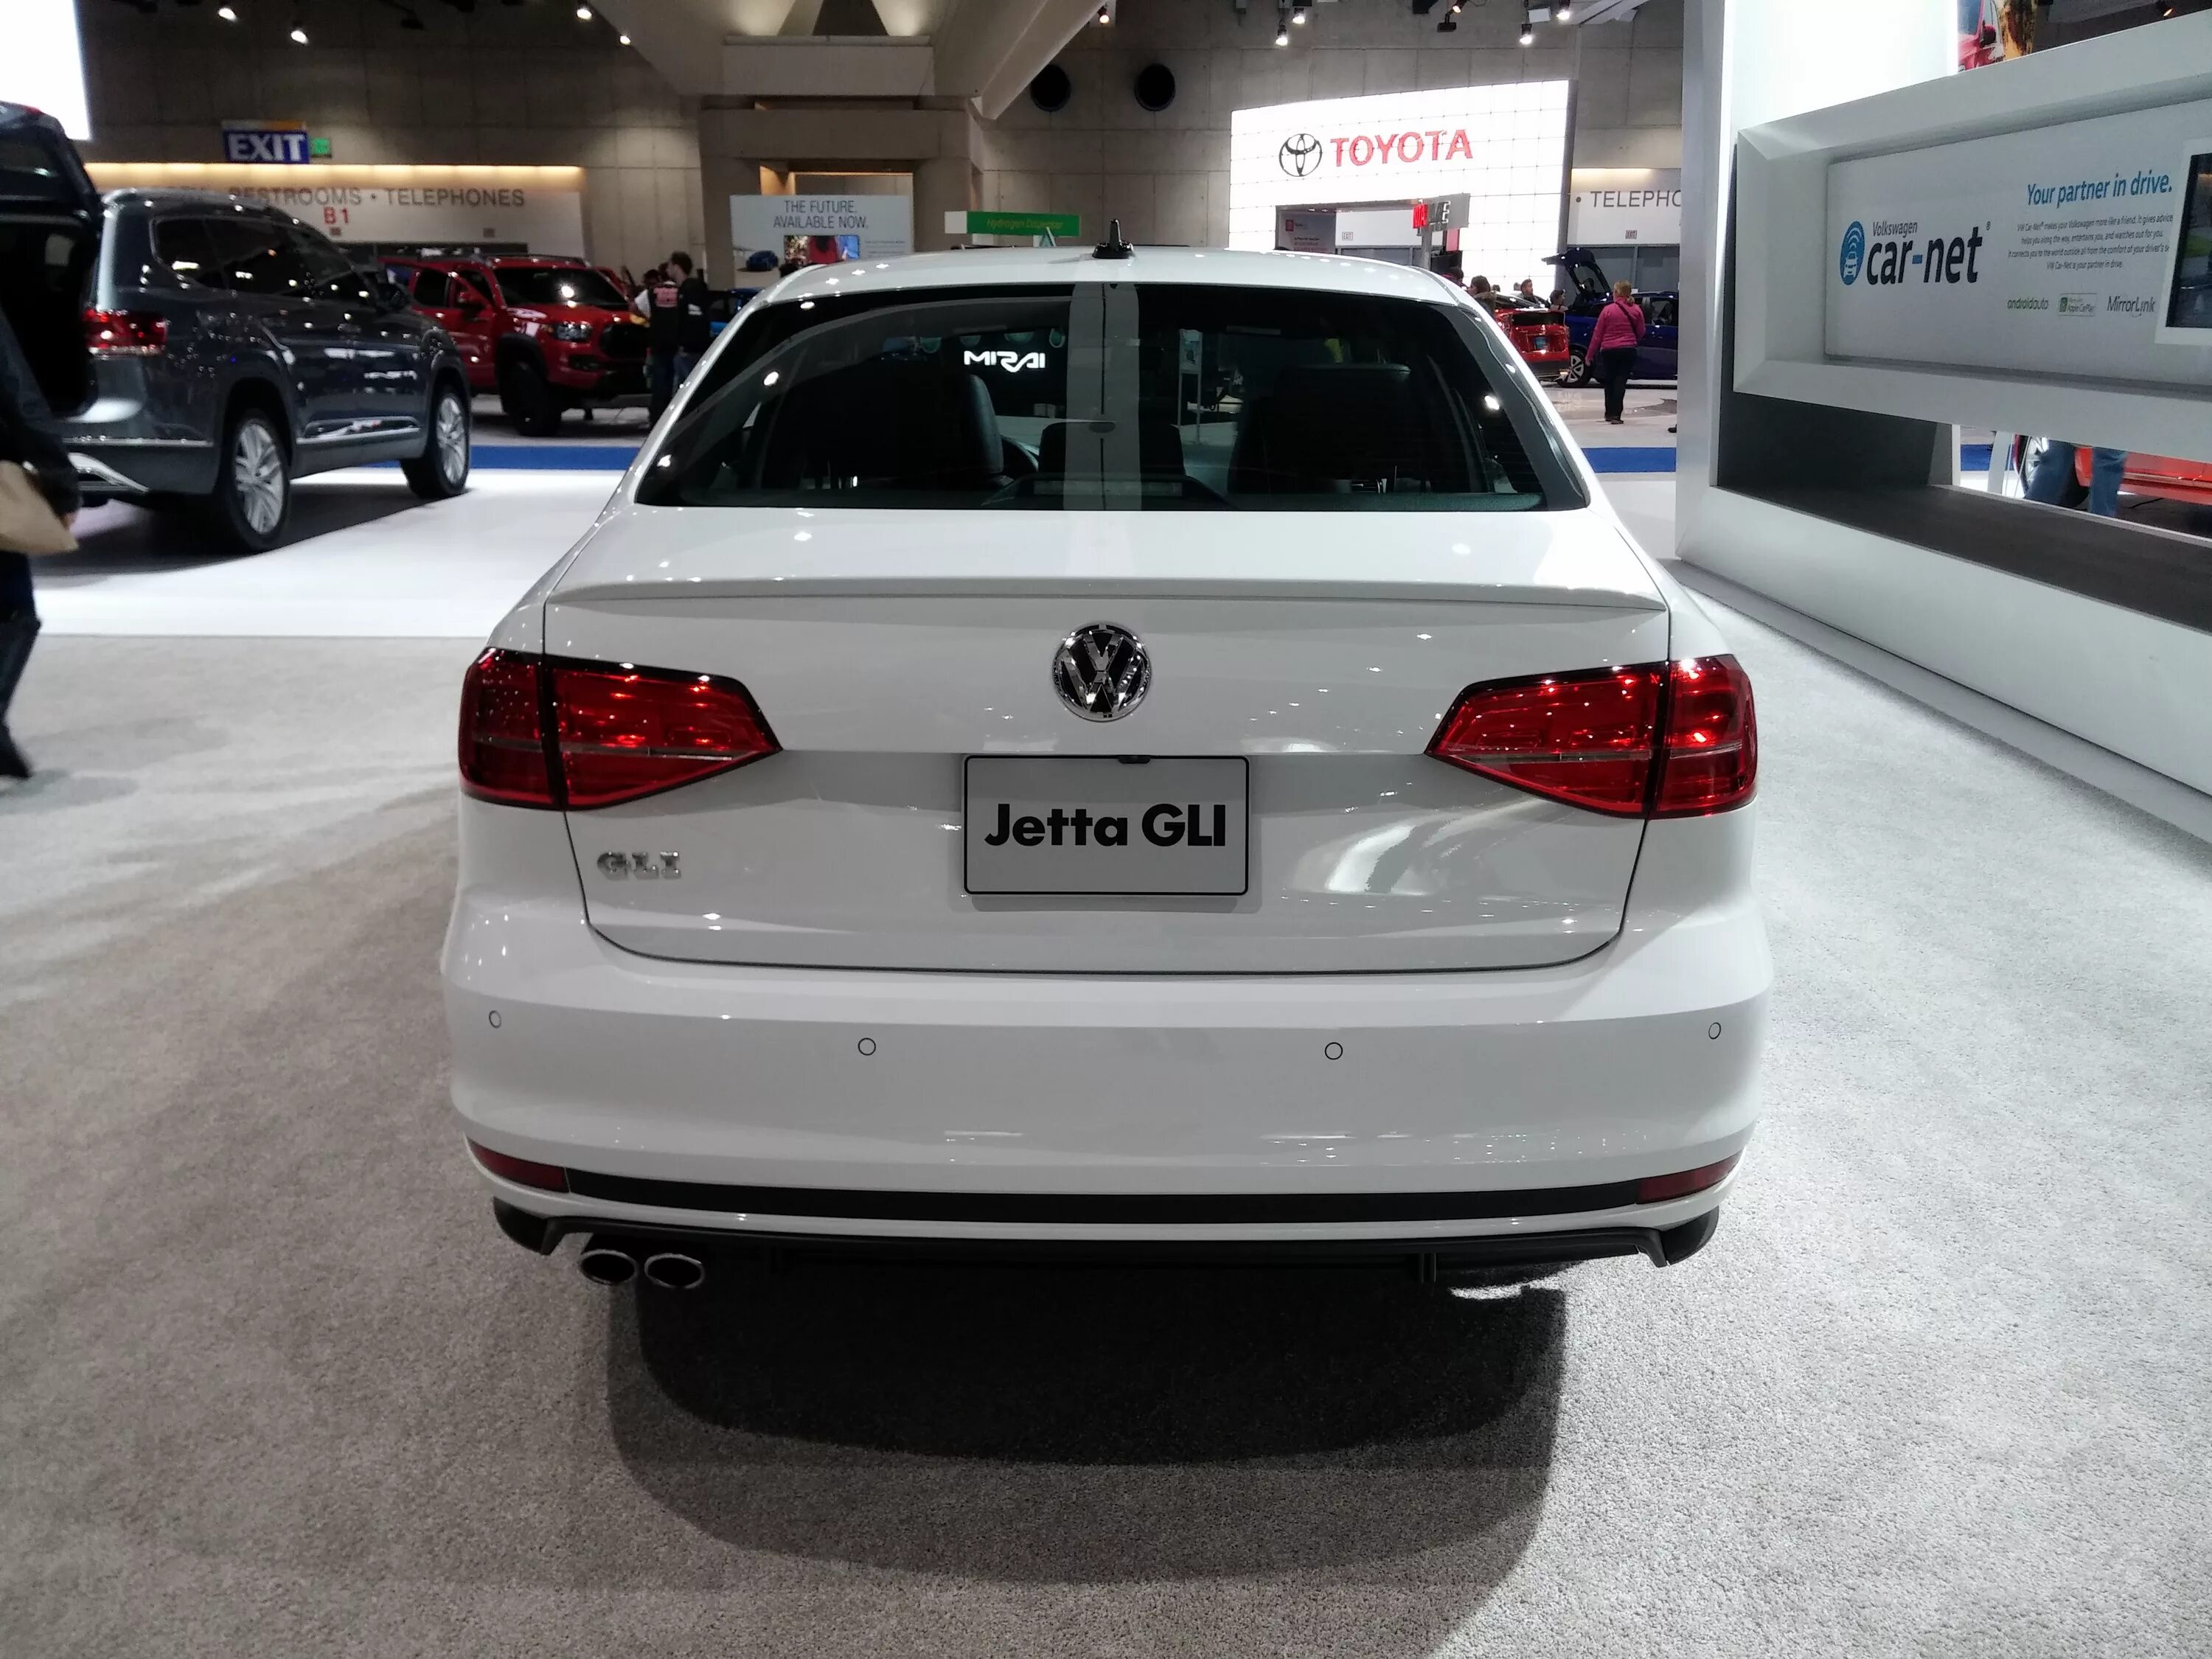 Volkswagen Jetta 2015 китайский. Джетта 6 gli.